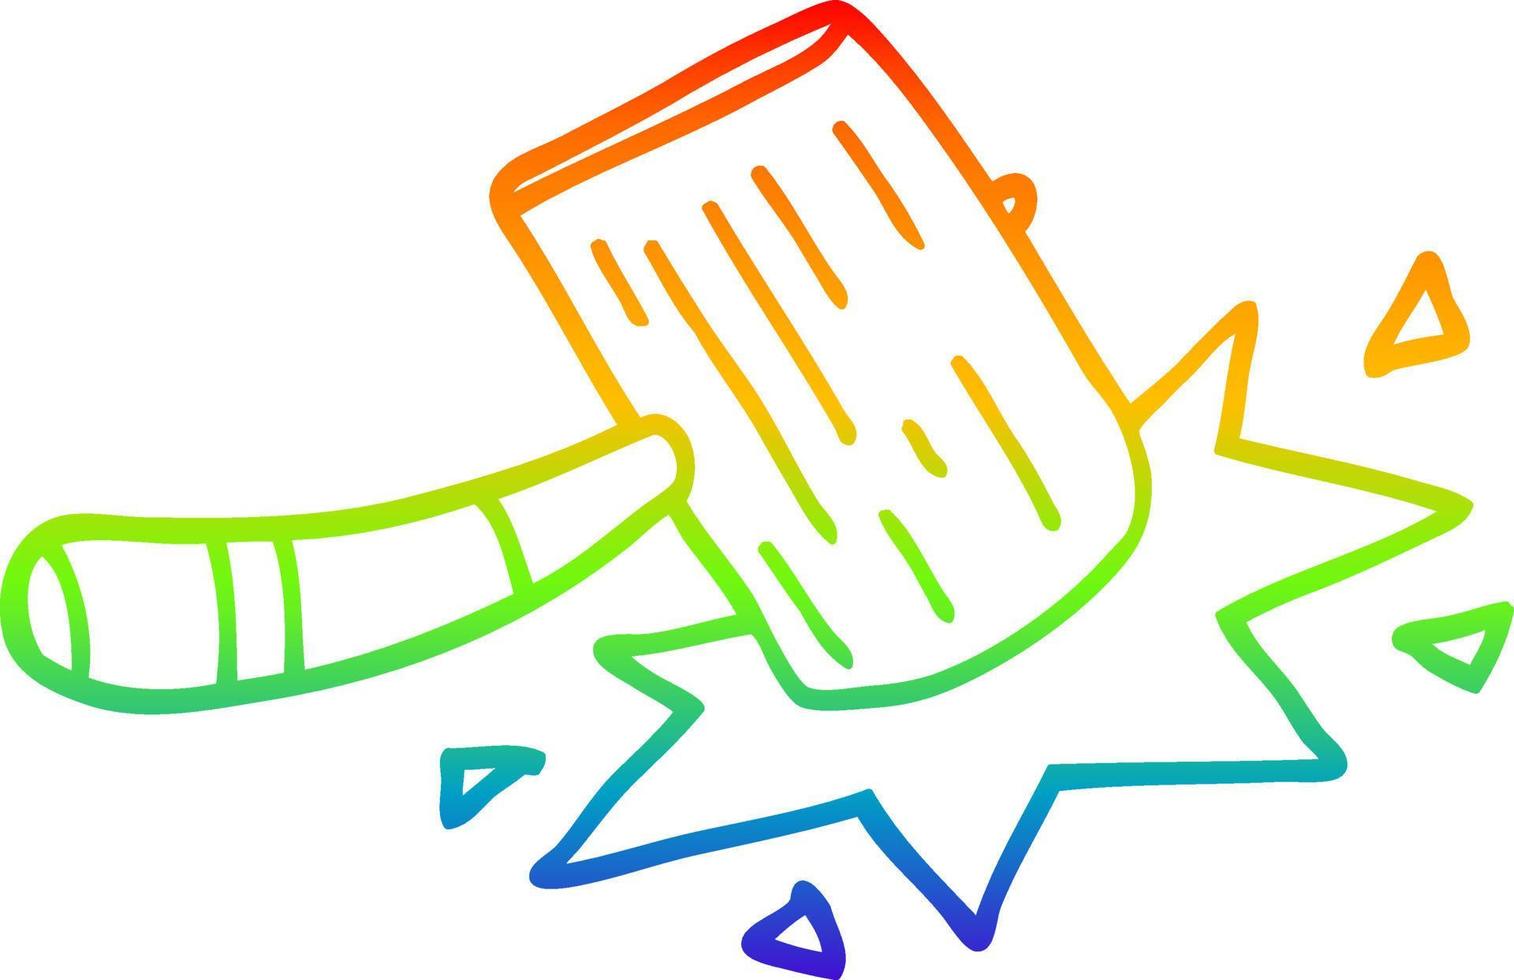 rainbow gradient line drawing cartoon wooden mallet vector